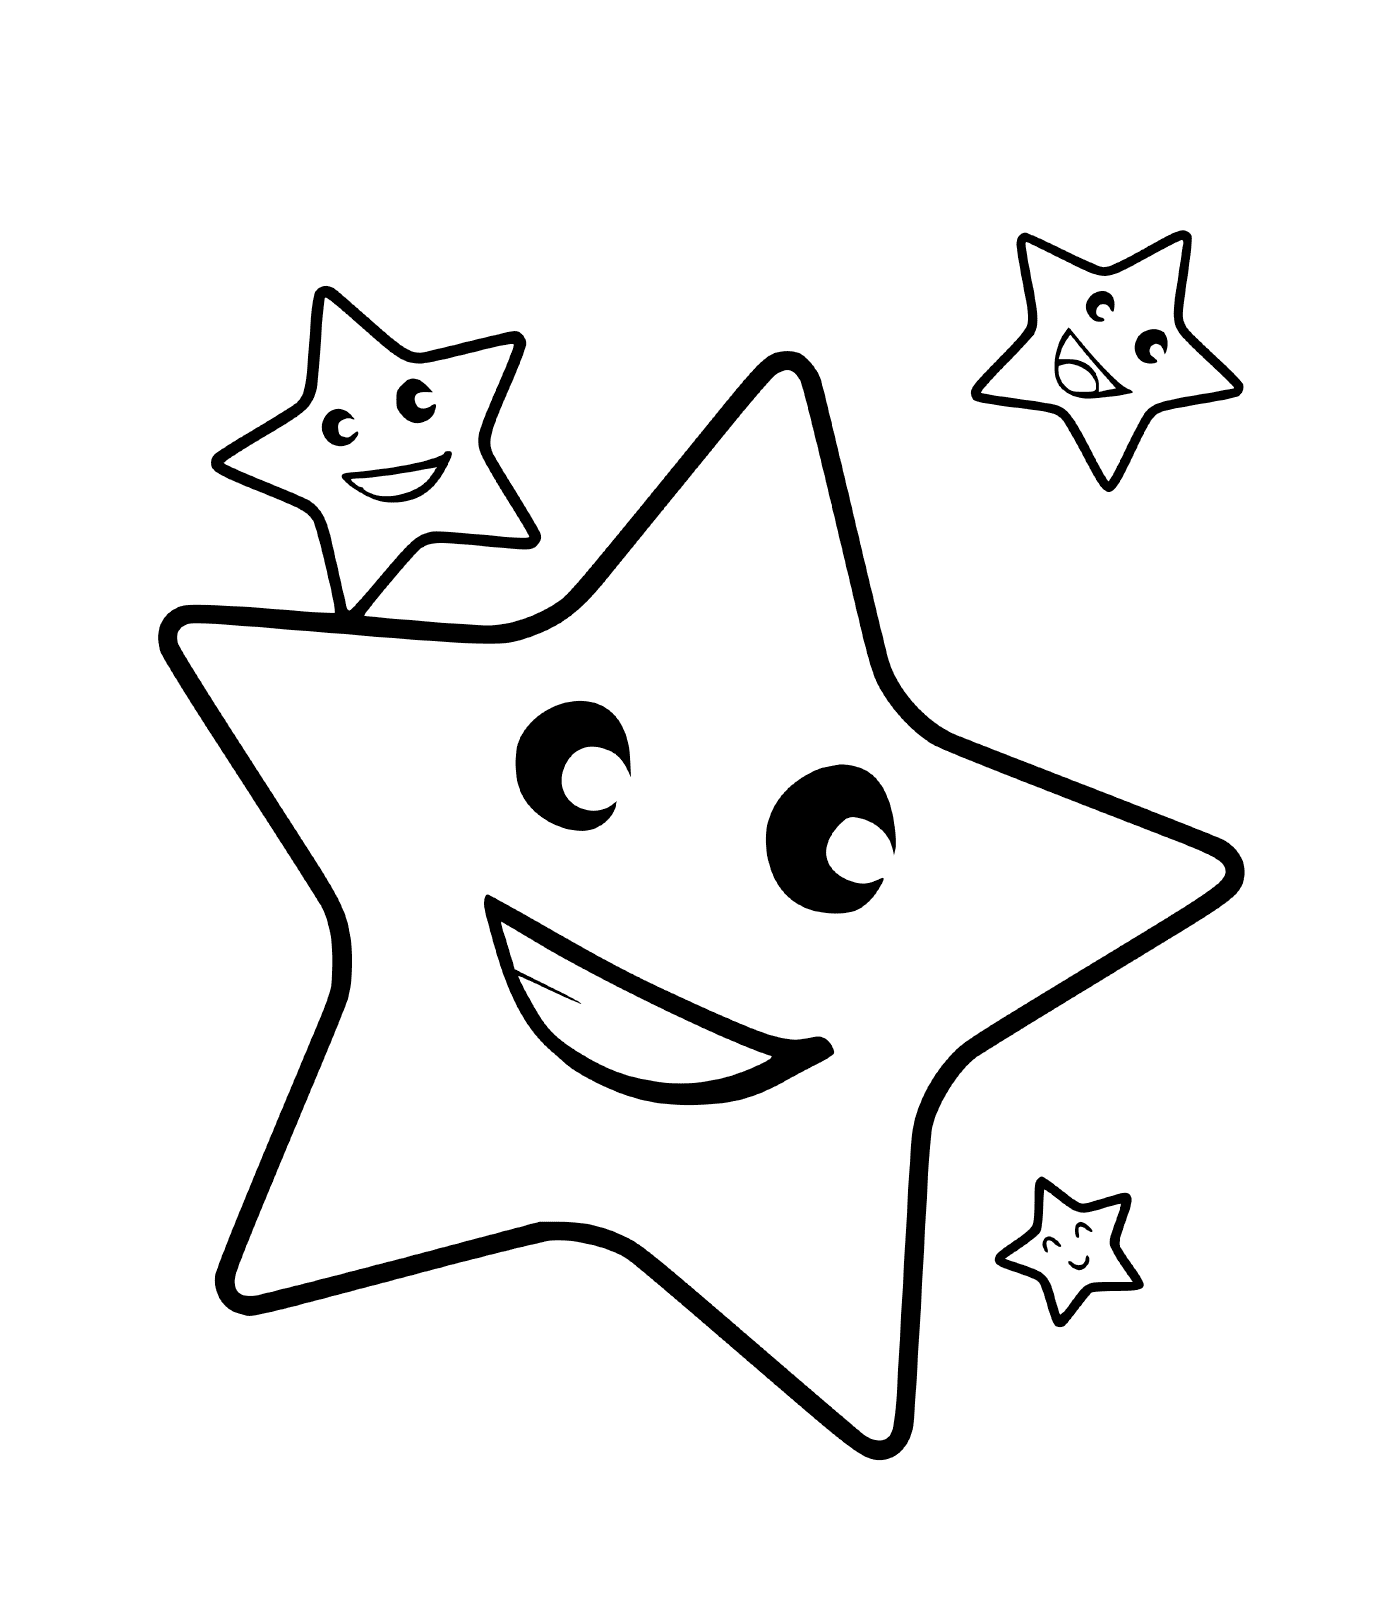  Una estrella con tres caras sonrientes 